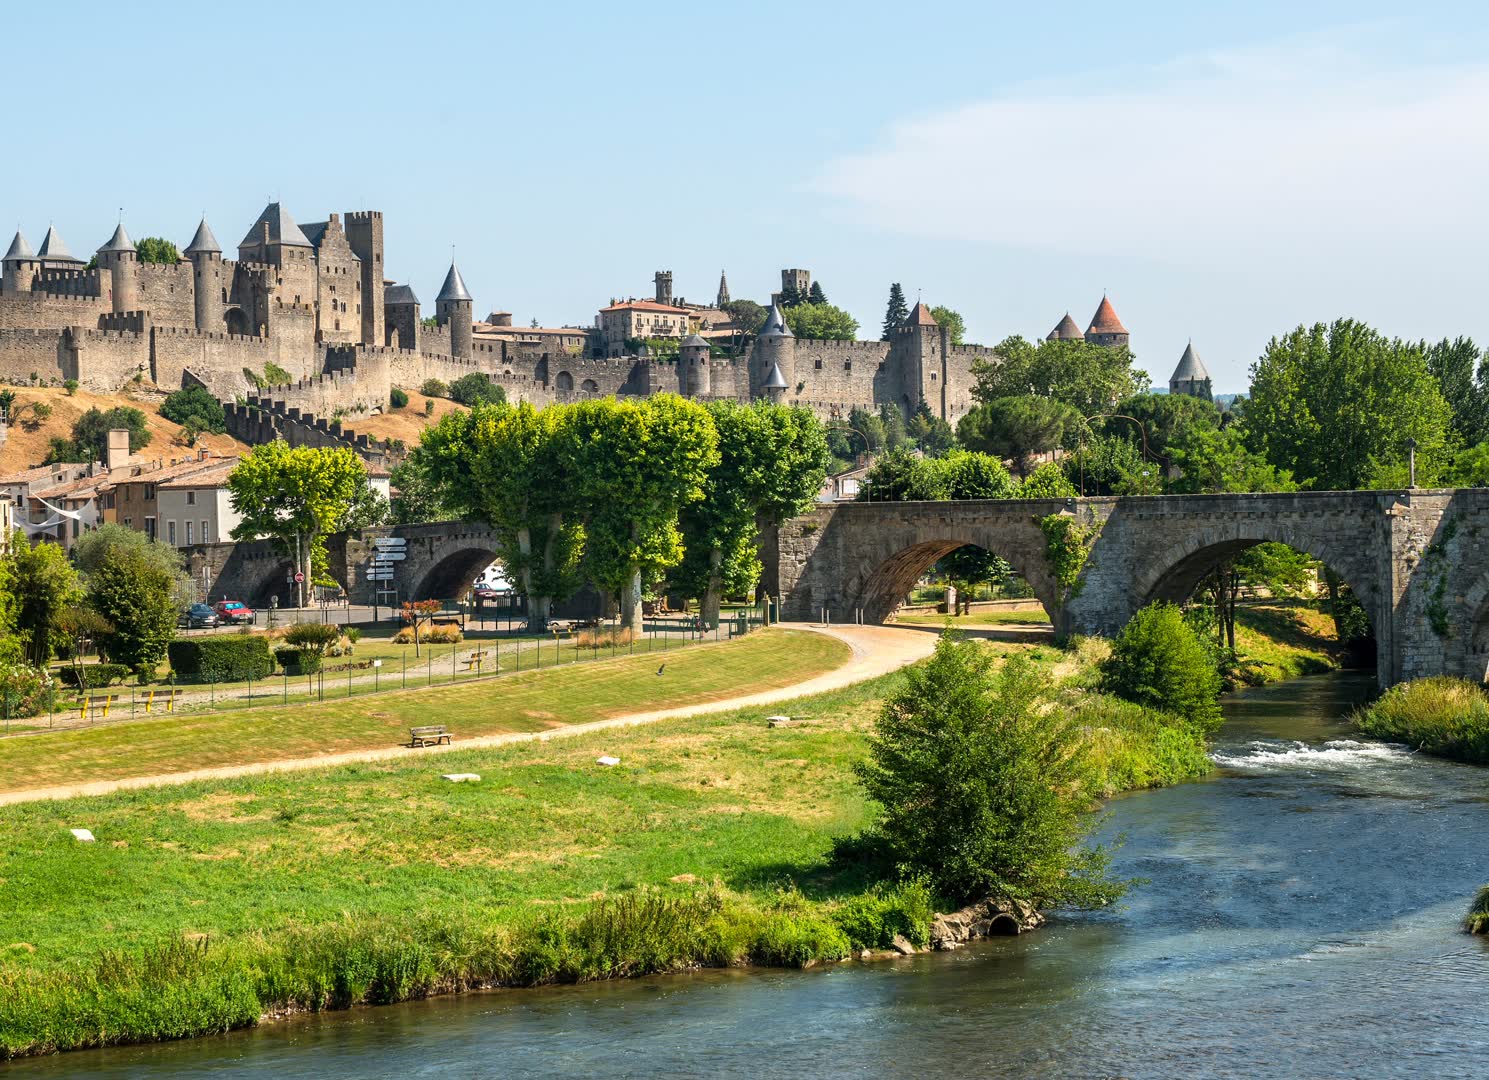 La cité médiévale de Carcassonne dans l'Aude. JVO Voyage, votre agence de voyages en groupe par excellence, organise des excursions en Occitanie.